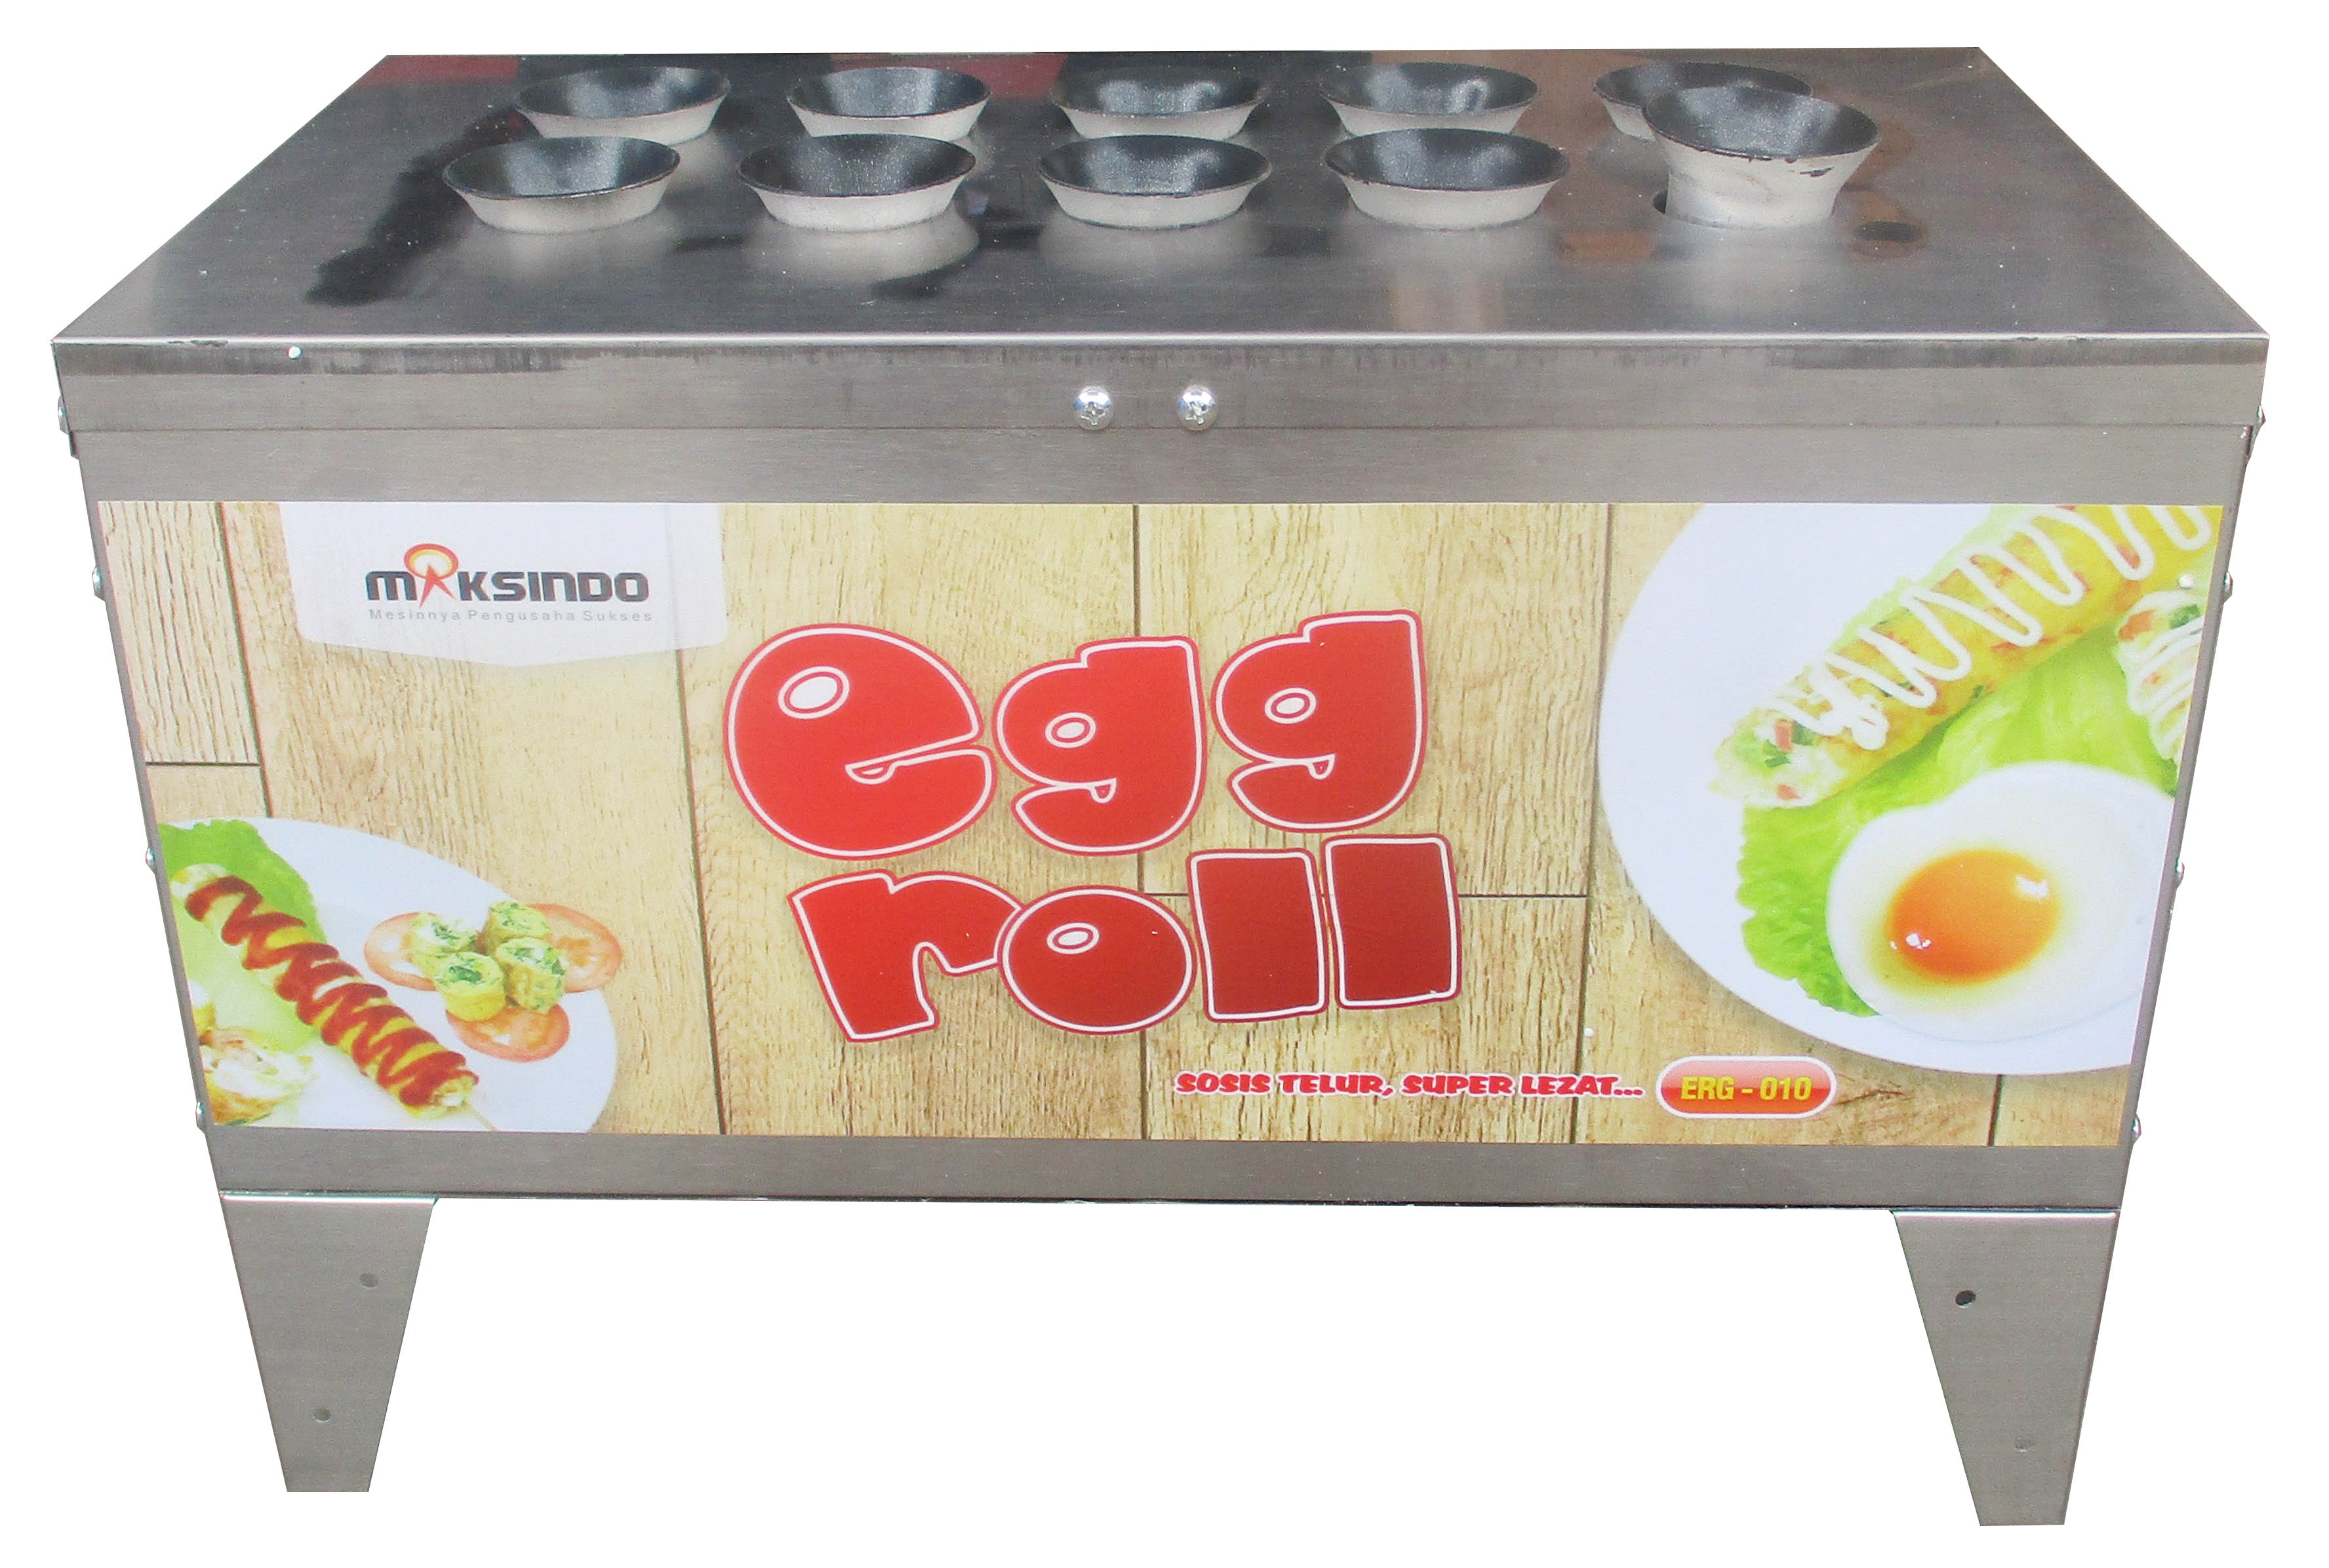 Jual Mesin Pembuat Egg Roll ERG-010 di Jakarta